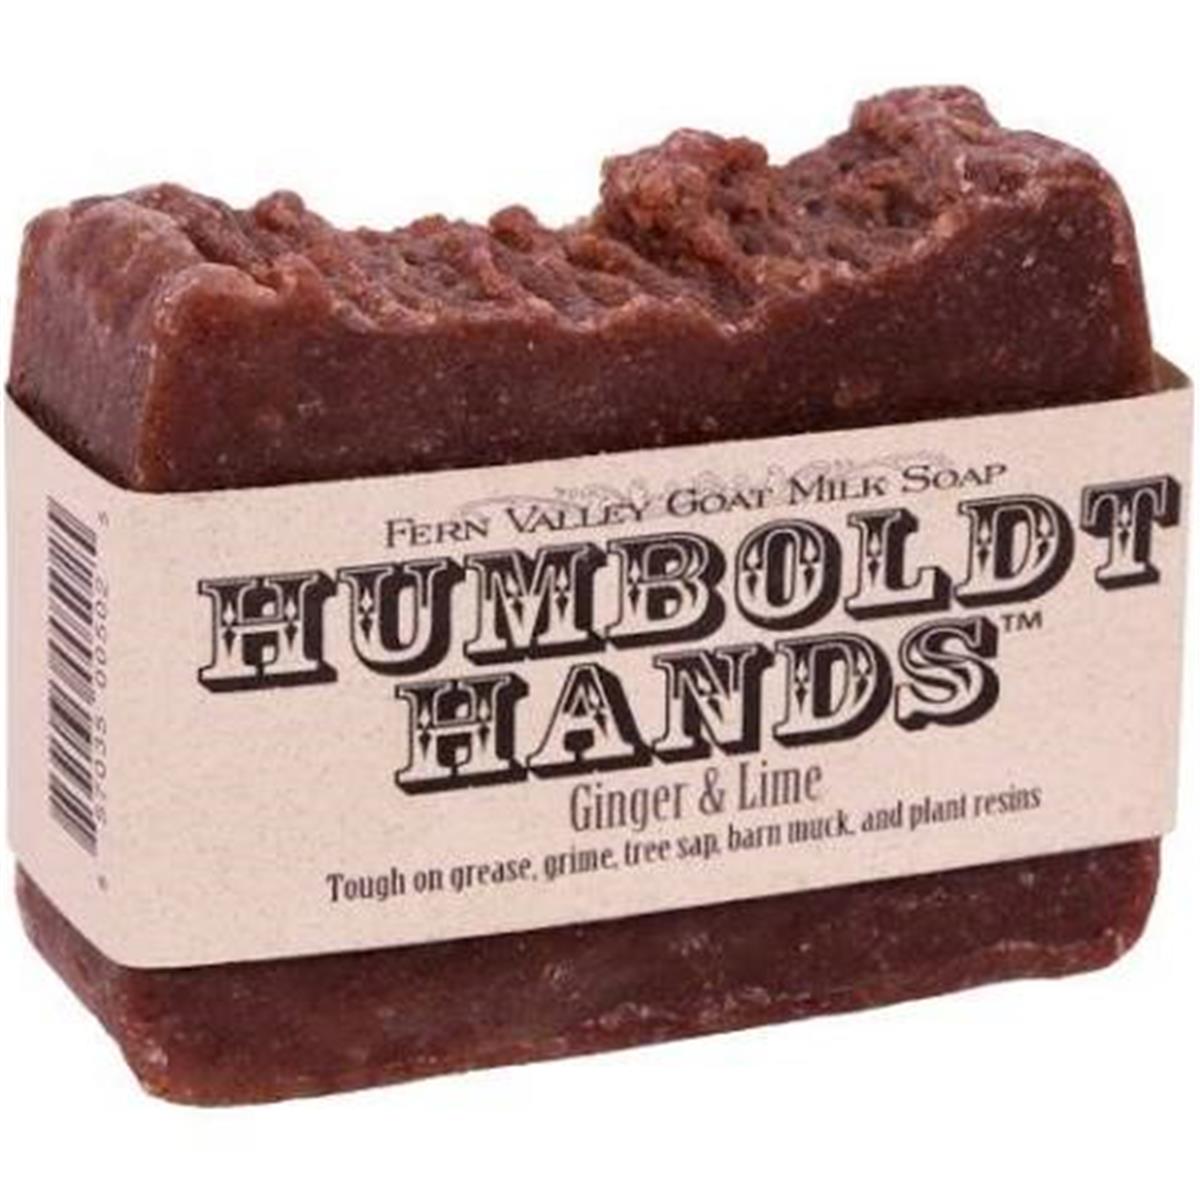 9489659 Humboldt Hands Ginger Lime Soap